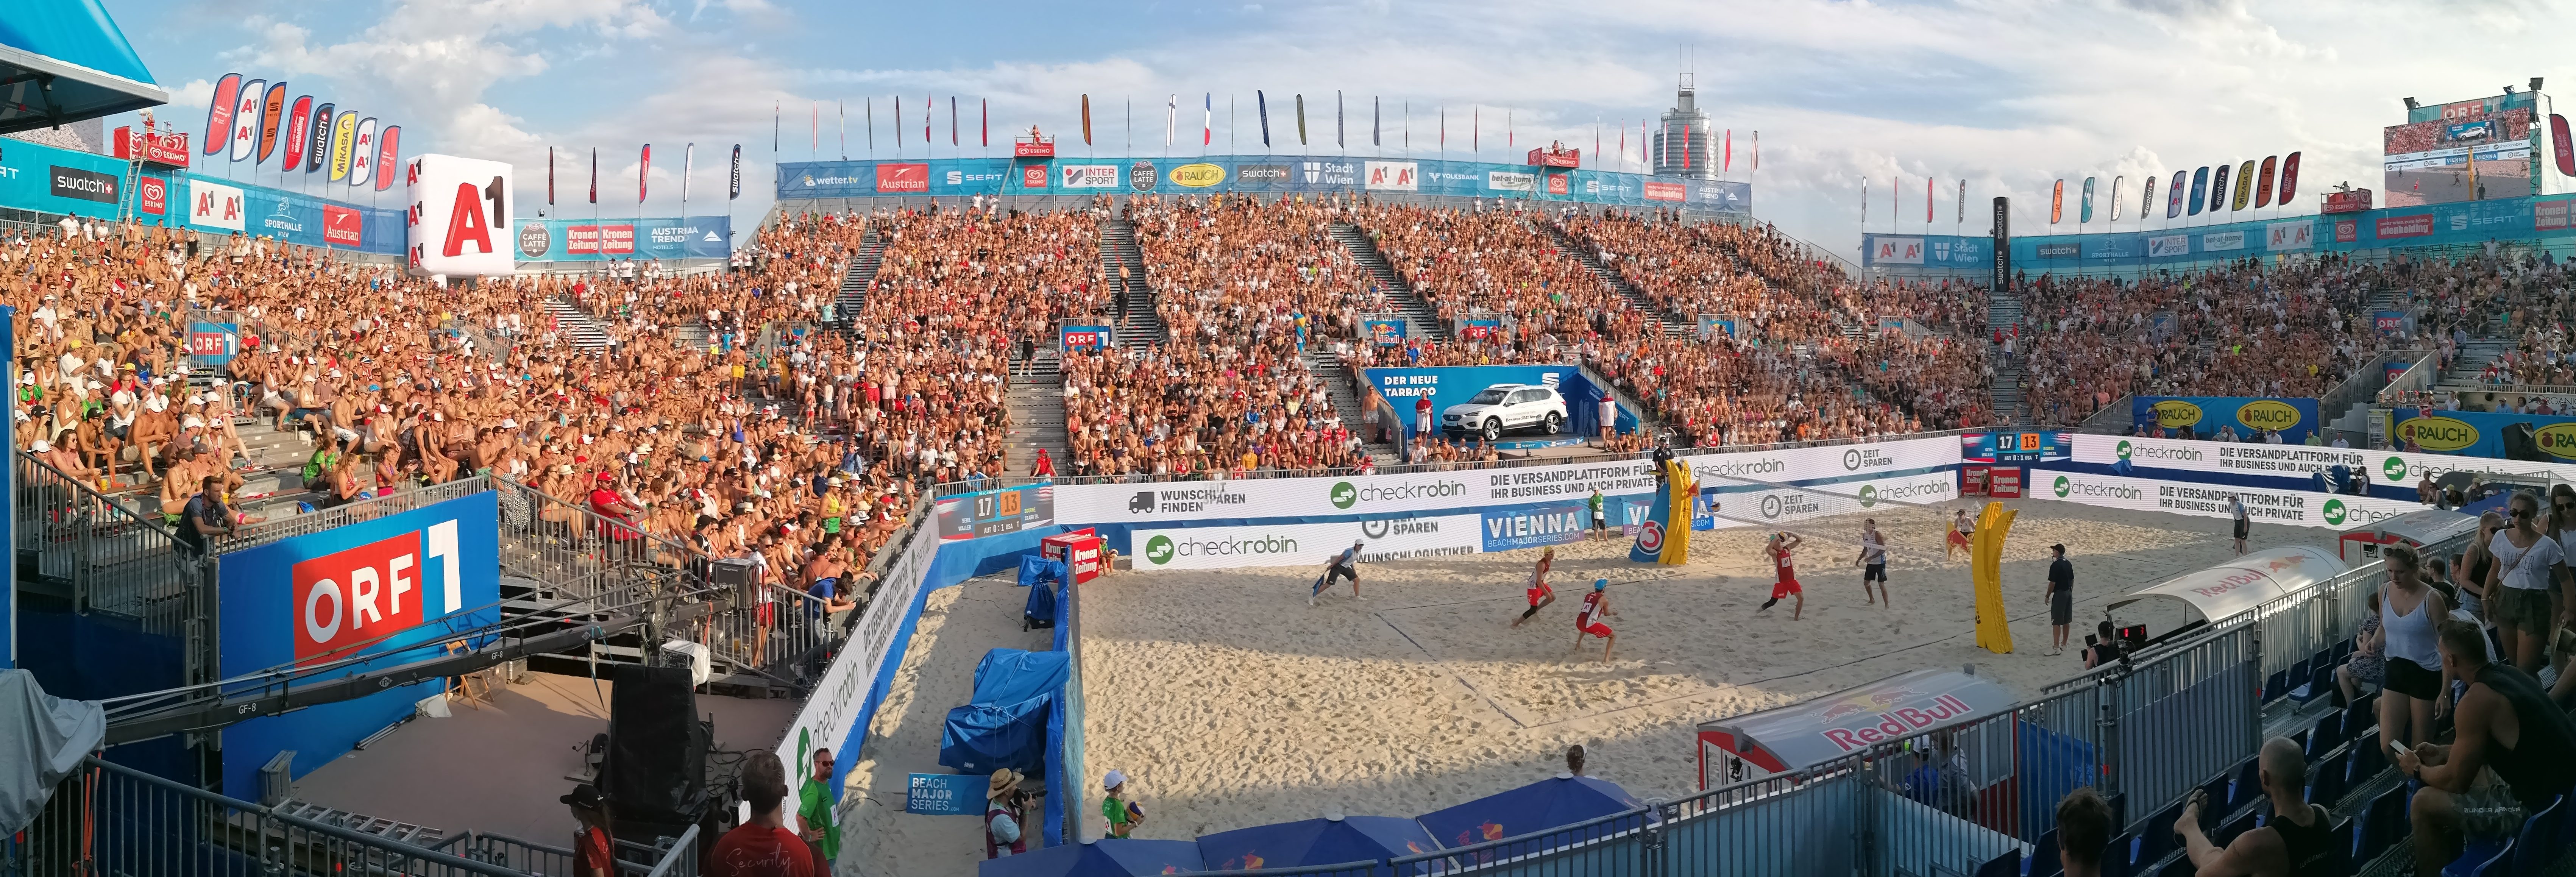 Beachvolleyball A1 Major Vienna 2019 (1)